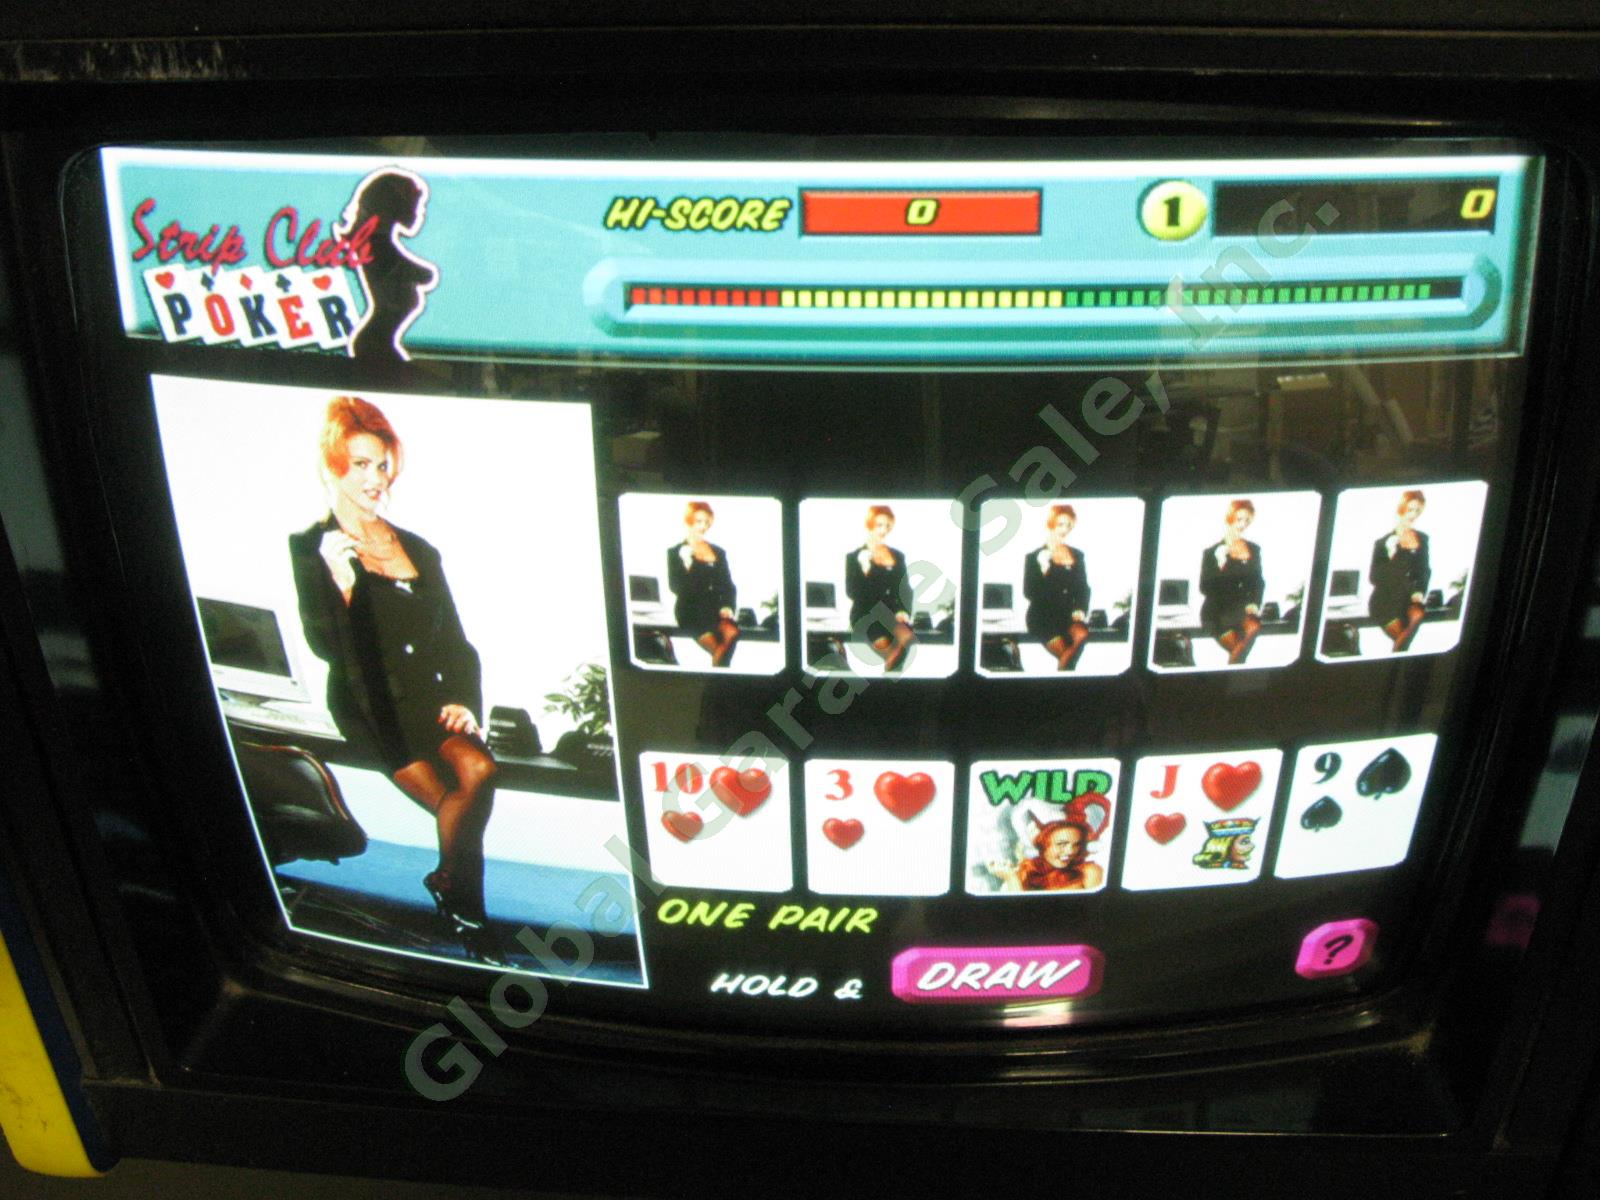 Merit MegaTouch MAXX Countertop Touchscreen Arcade Bar Video Game +Bill Acceptor 2